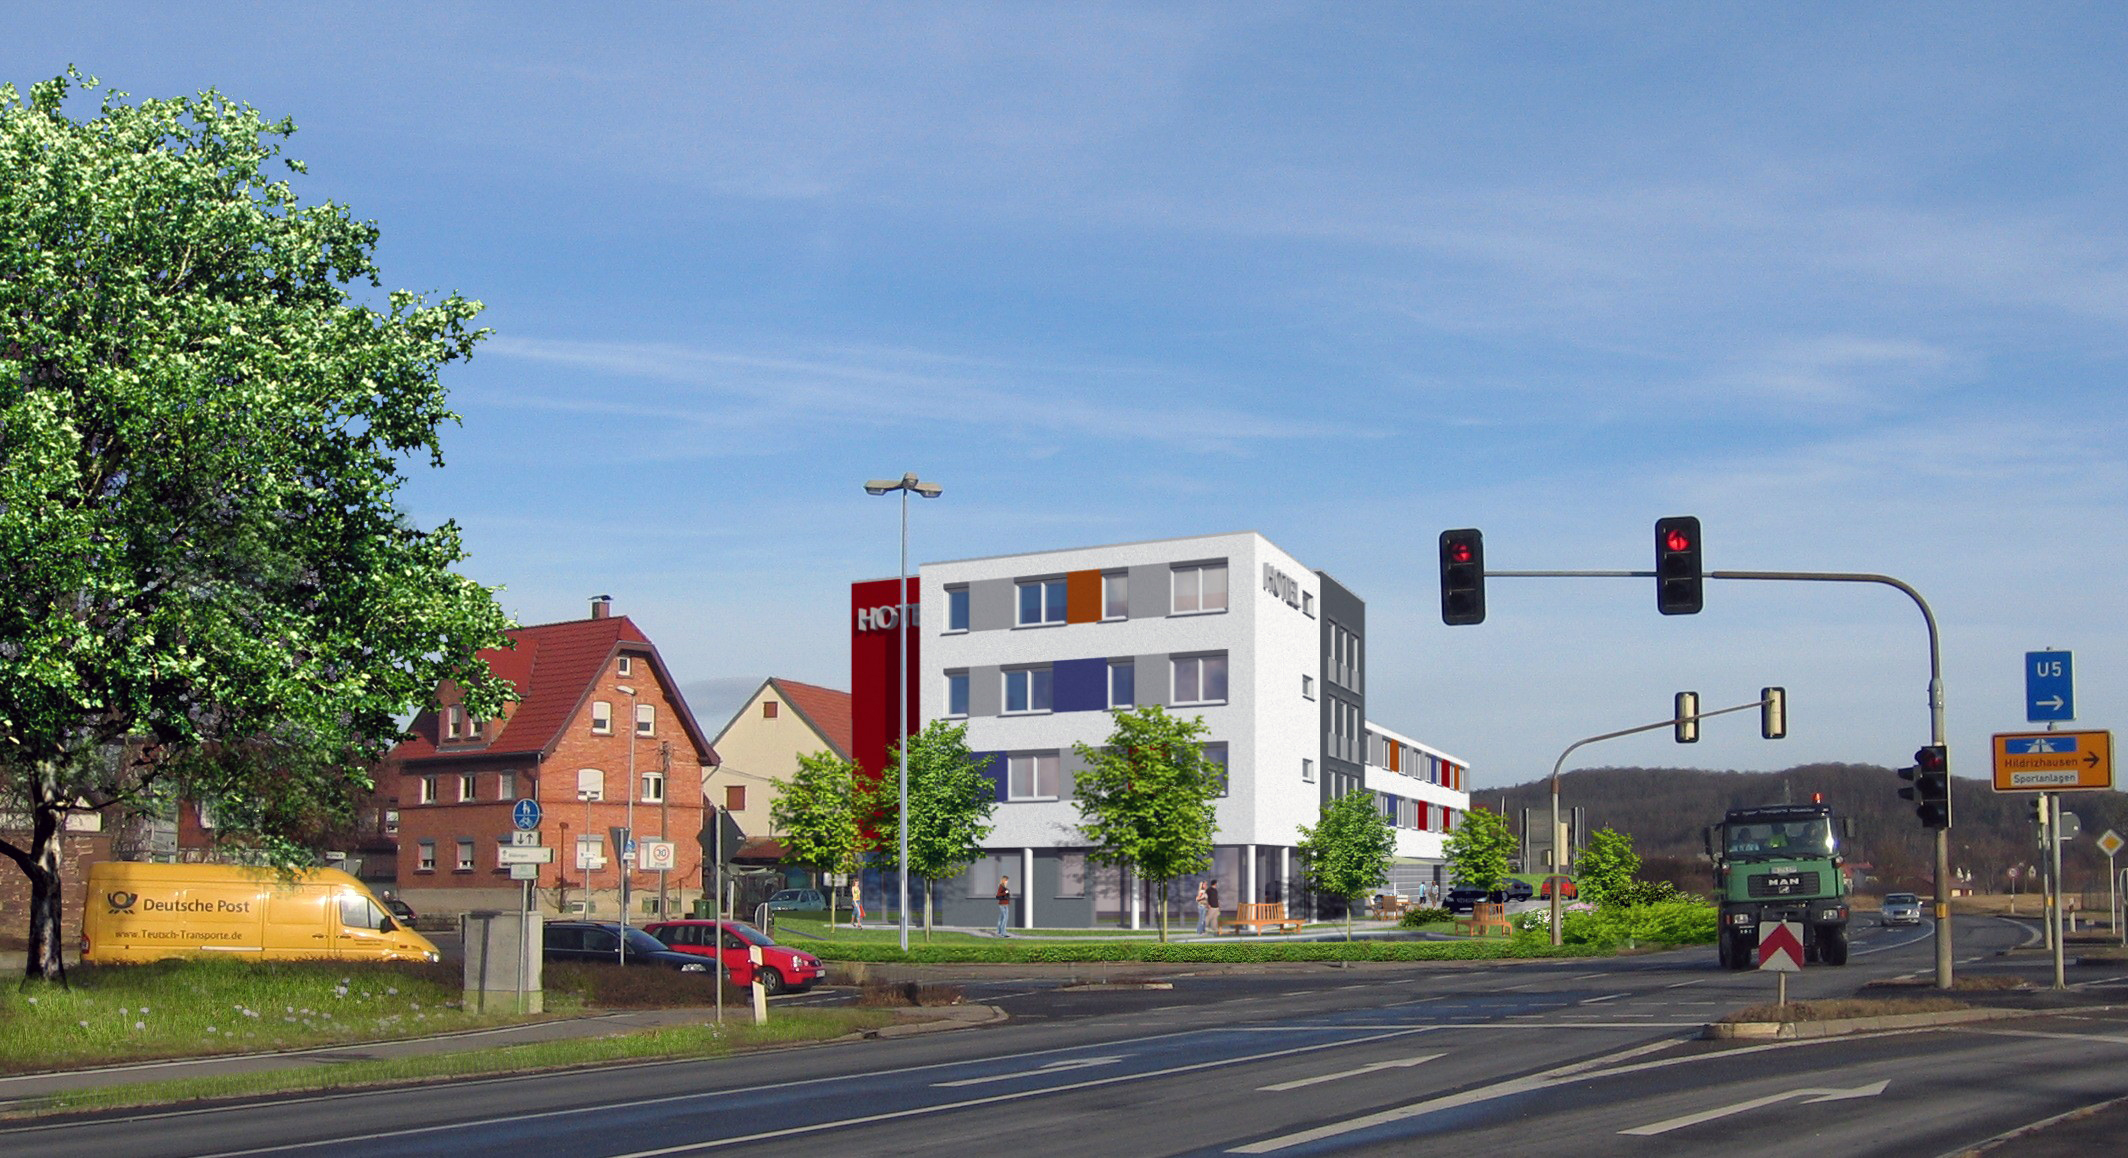 Augangsbild eines Grundstückes vorgesehen für den Neubau des Apart-Hotel in Ehningen/BB. Architektur-Visualisierung mit Fotomontage des Hotels wurde auf Basis dieses Bildes erstellt. Auftraggeber: KWE Kommunale Wohnbau Ehningen GmbH im Jahre 2008). Hier die Vorher-Variante.